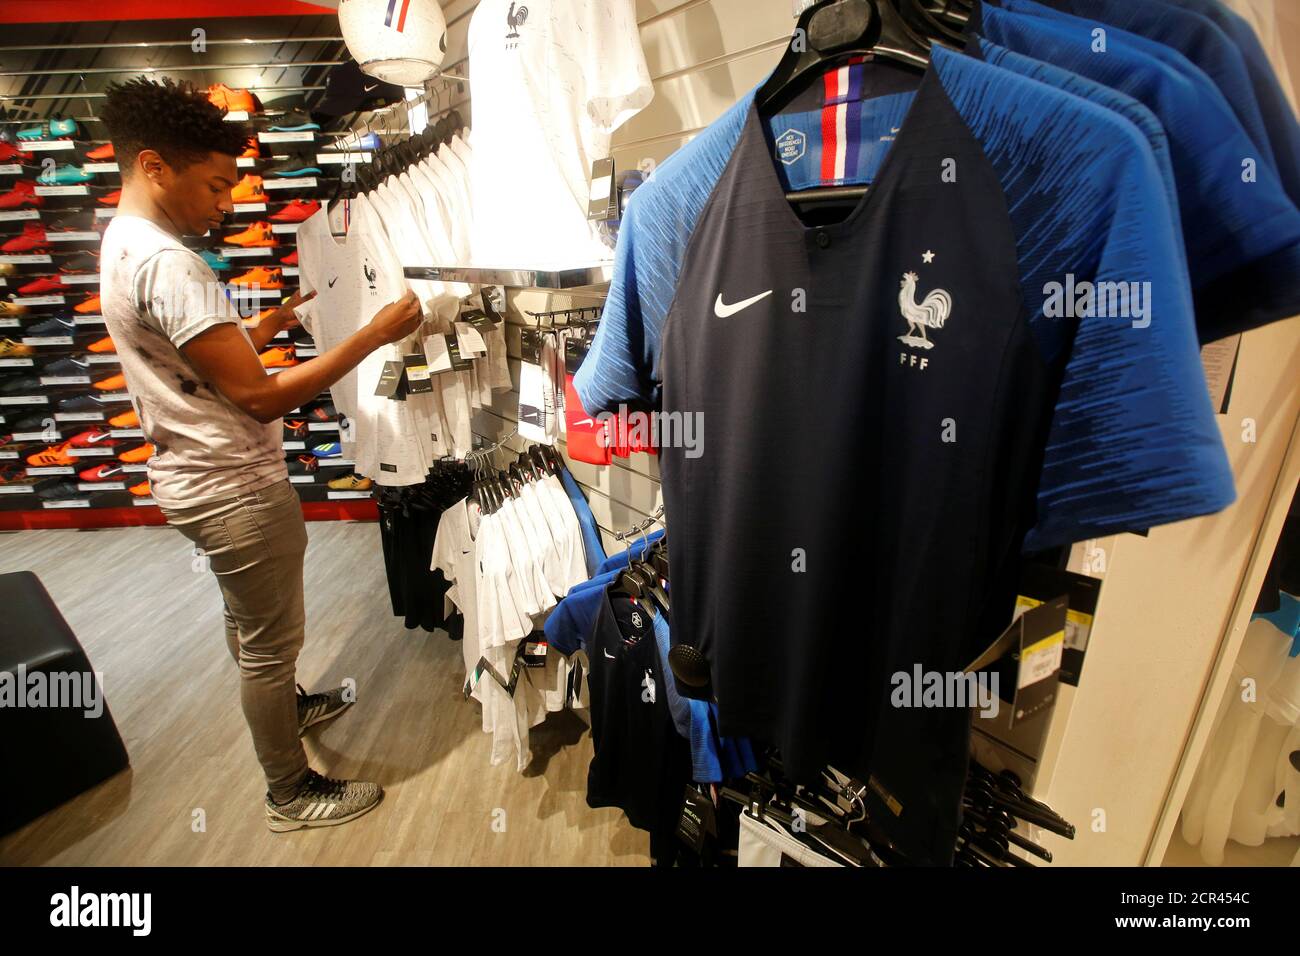 Les maillots de football de l'équipe de France sont exposés dans un magasin  d'articles de sport à Marseille, France, le 8 juin 2018. Le football  français a remporté un concours mondial avant